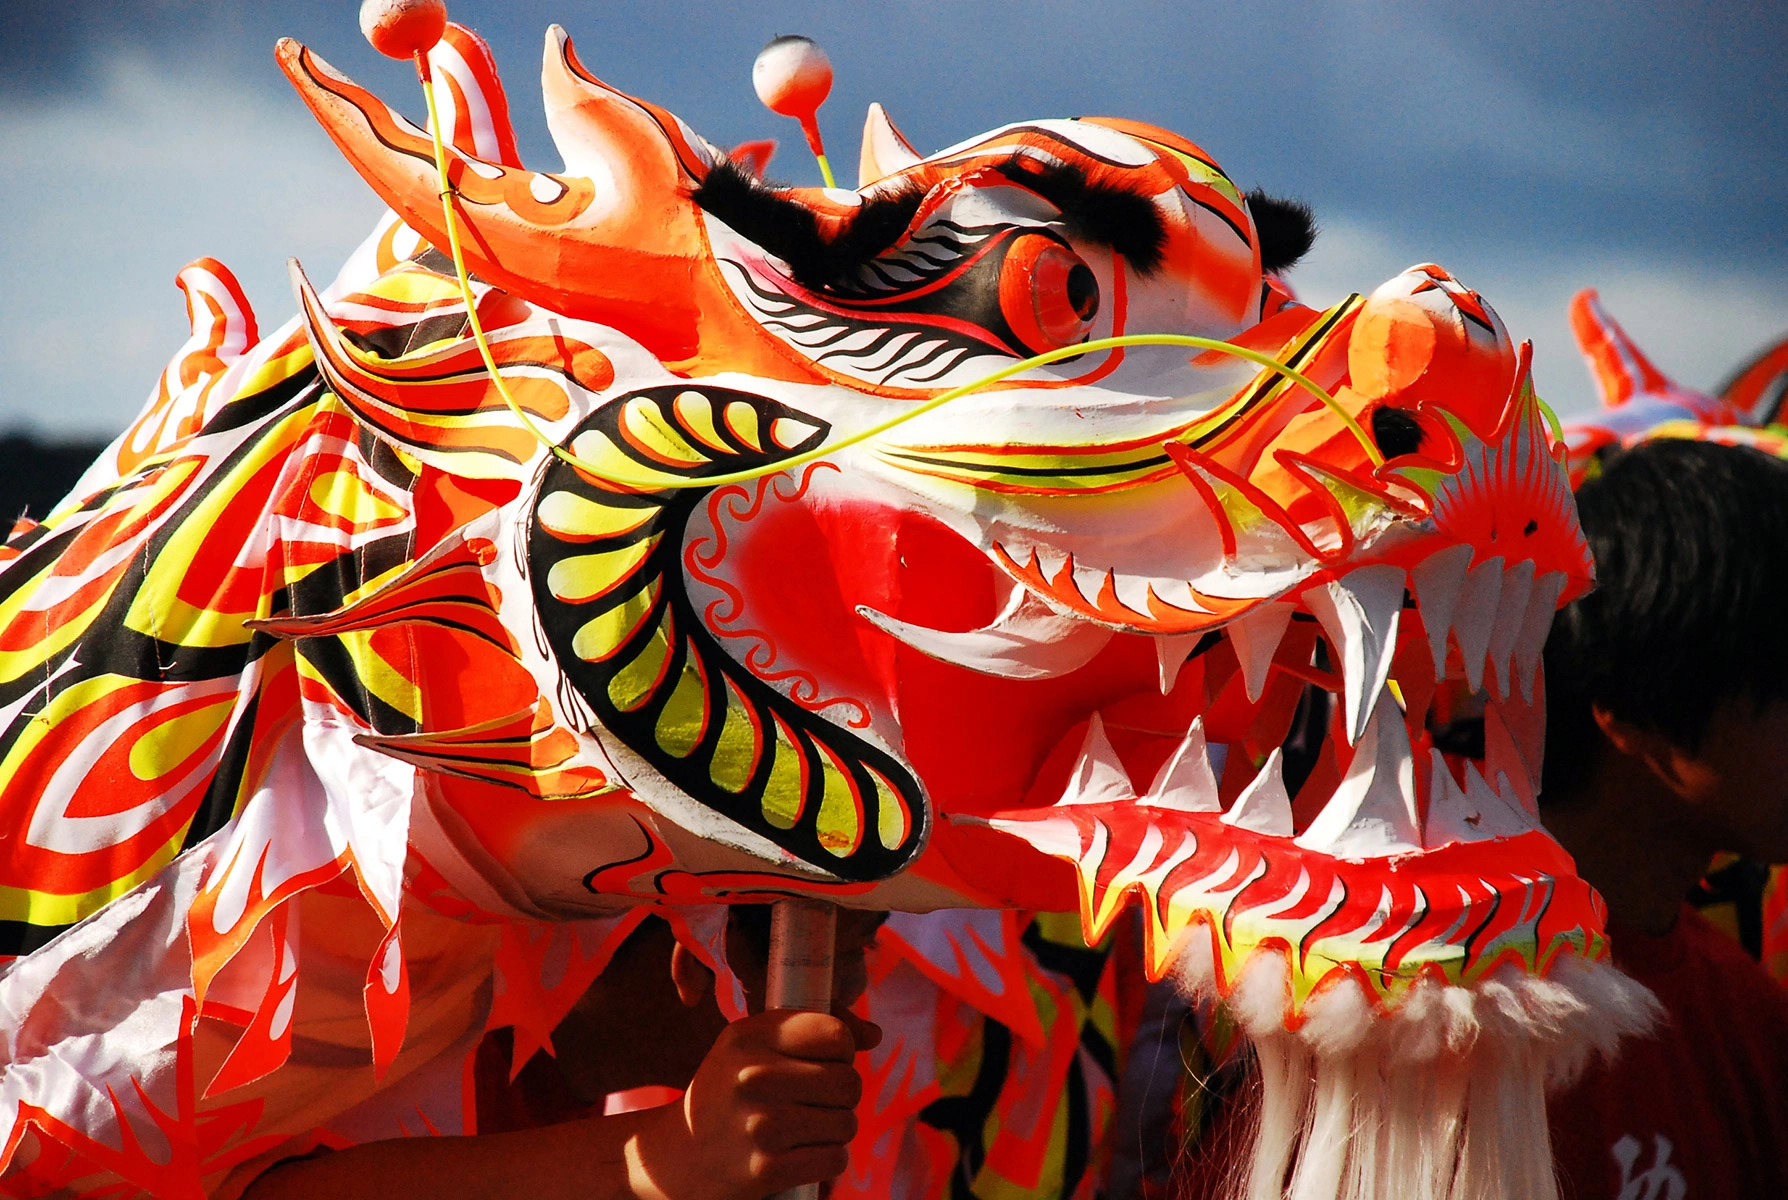 <p>В китайской культуре дракон символизирует светлое начало ян</p>

<p></p>